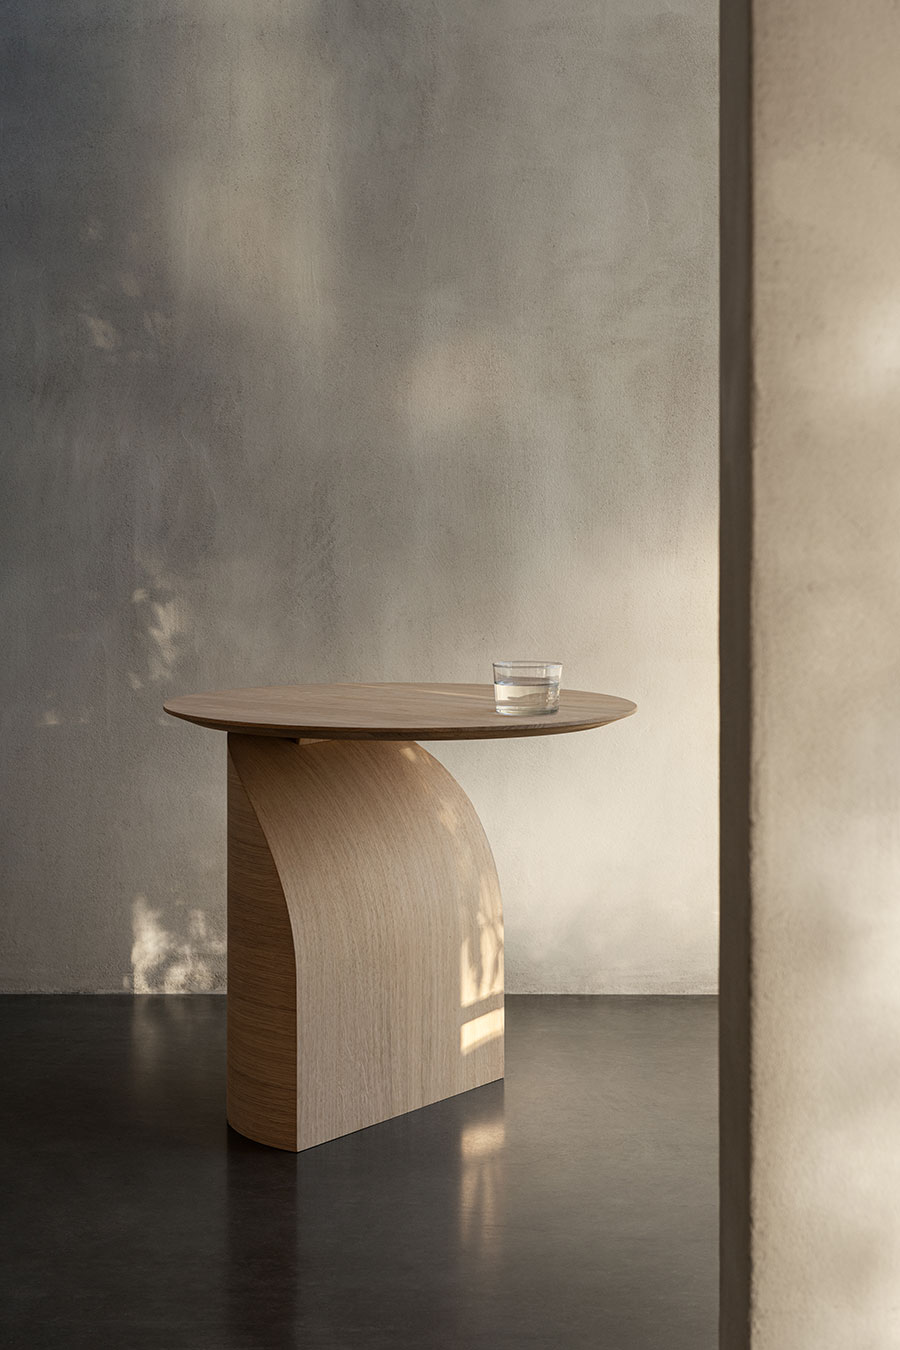 Bordet Savoa av Sakari Hartikainen kombinerar enkelhet och känsla av lätthet med avancerad teknik.